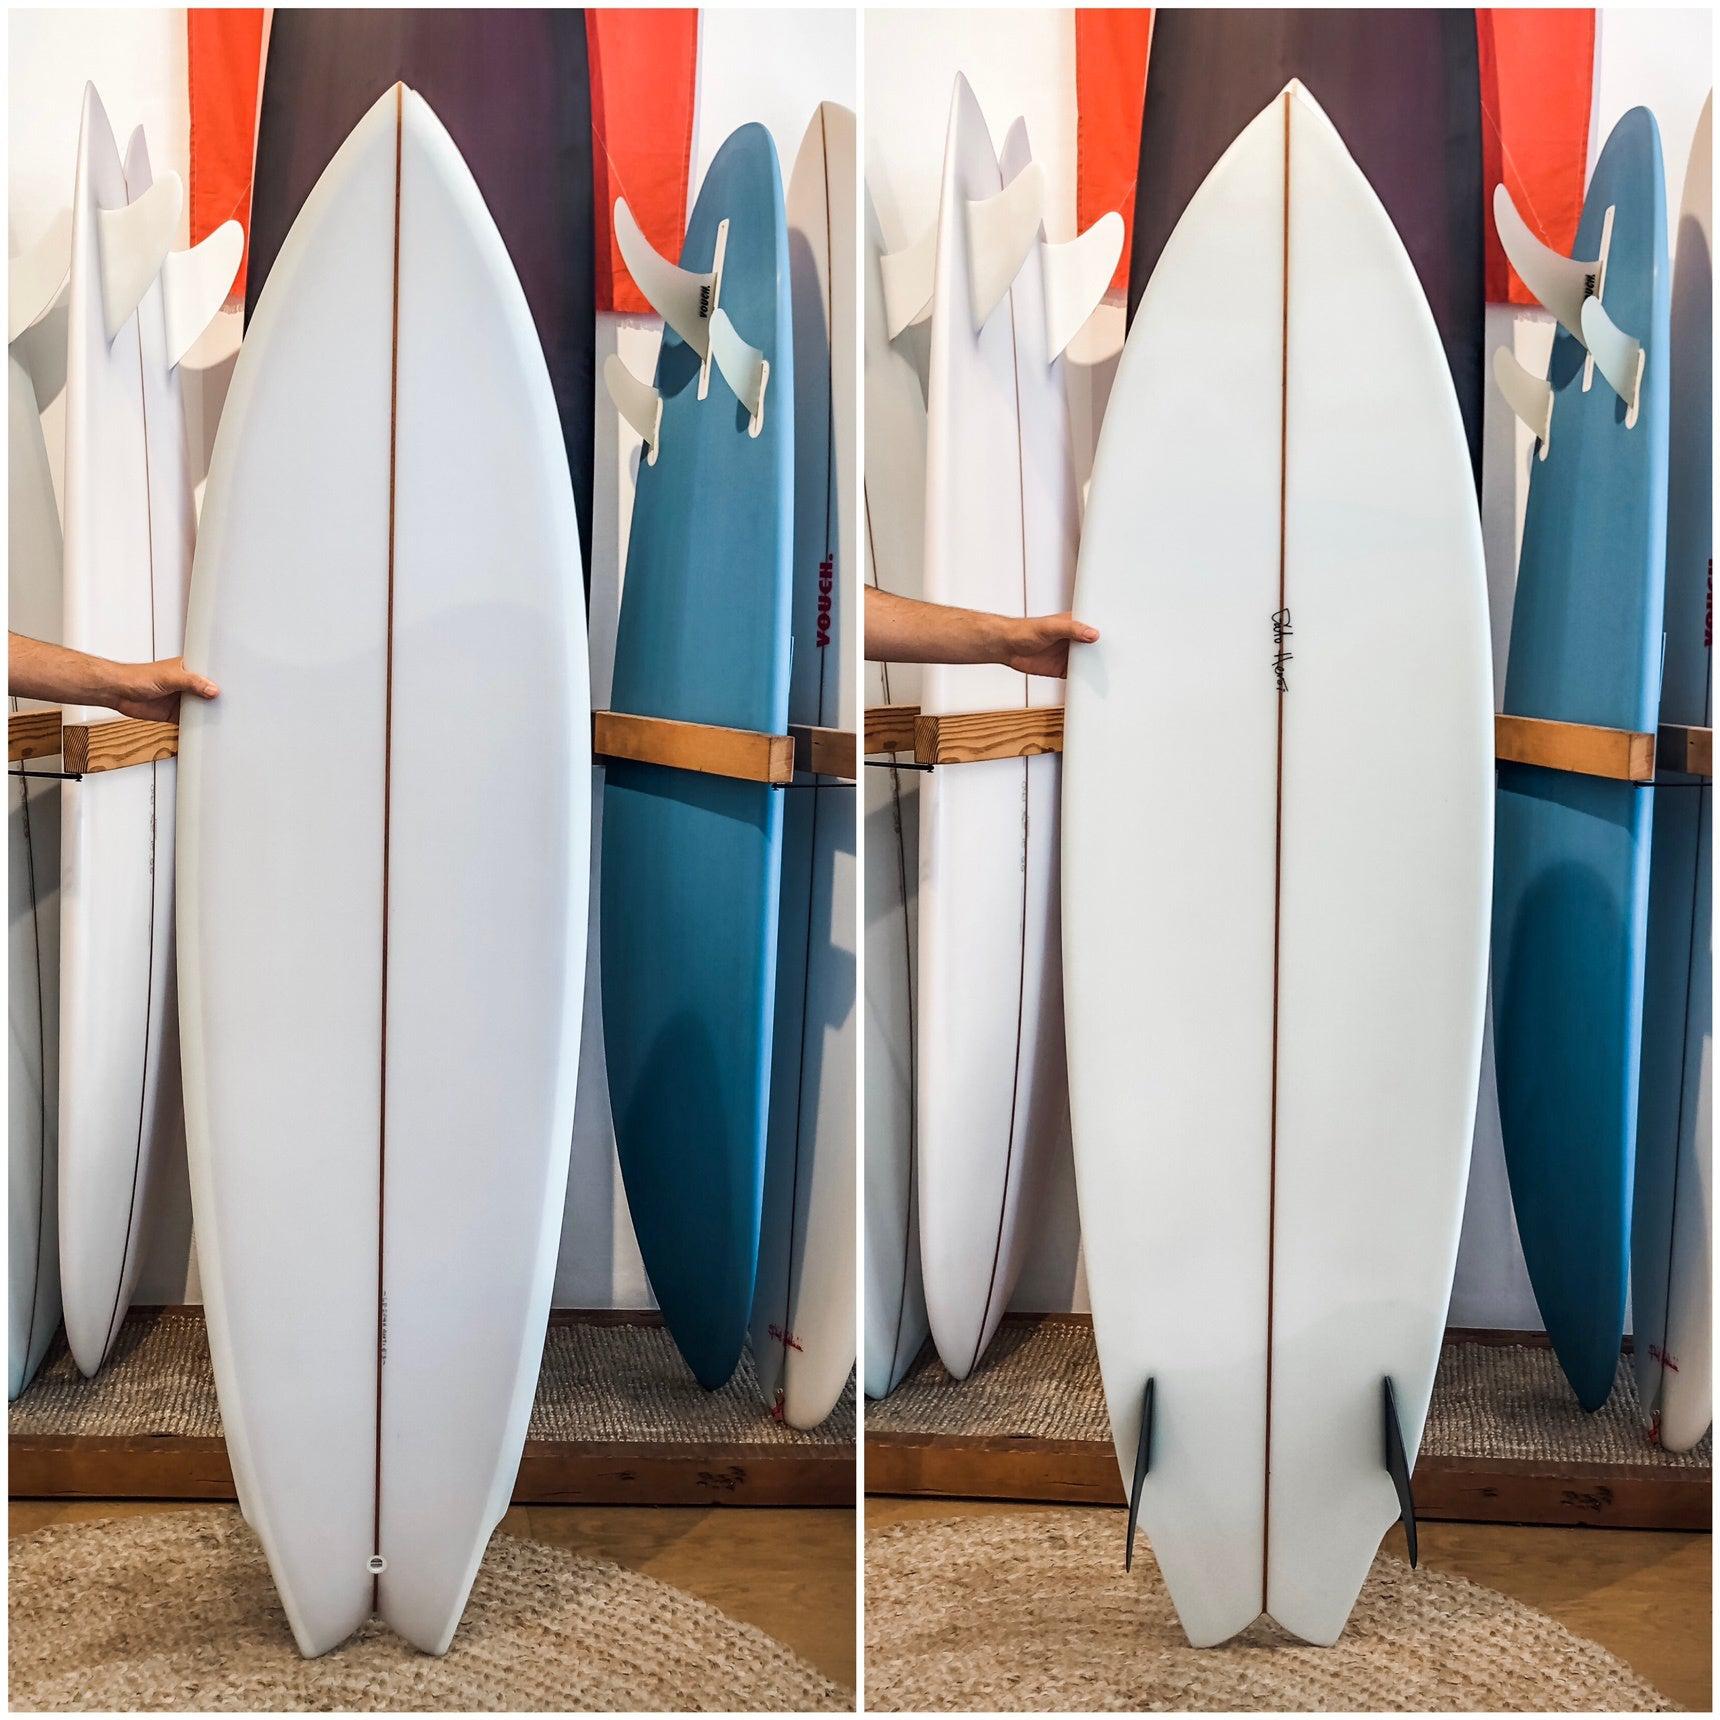 GATO HEROI 6'3" ANTIFISH-Keel Surf & Supply